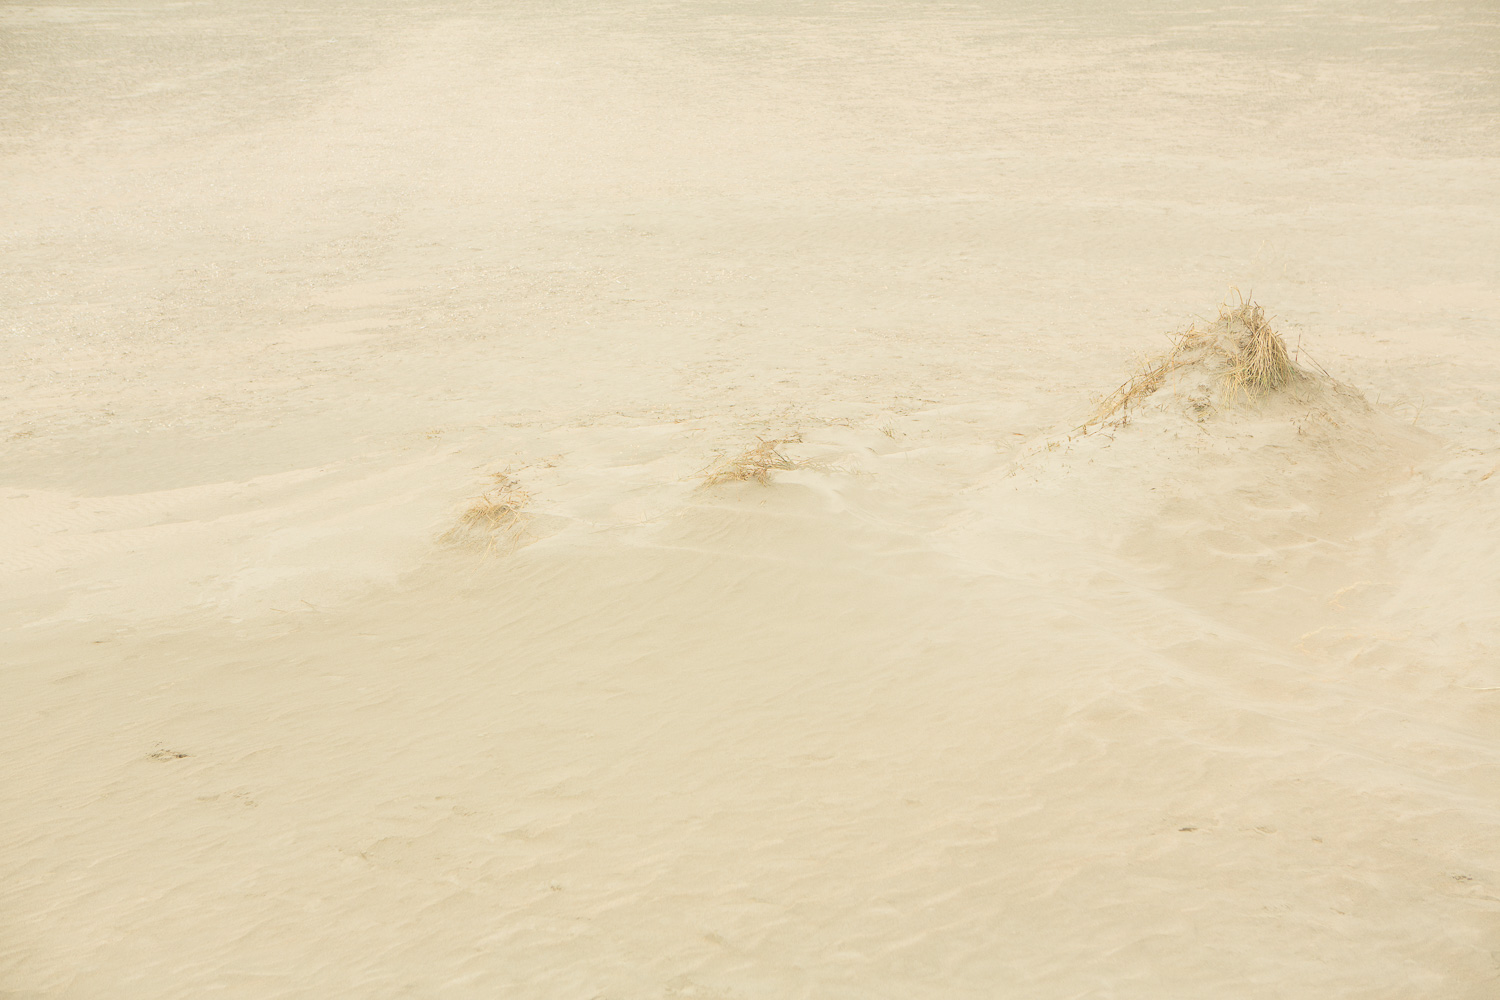  Dunes III, 2016 //  120 x 180 cm  